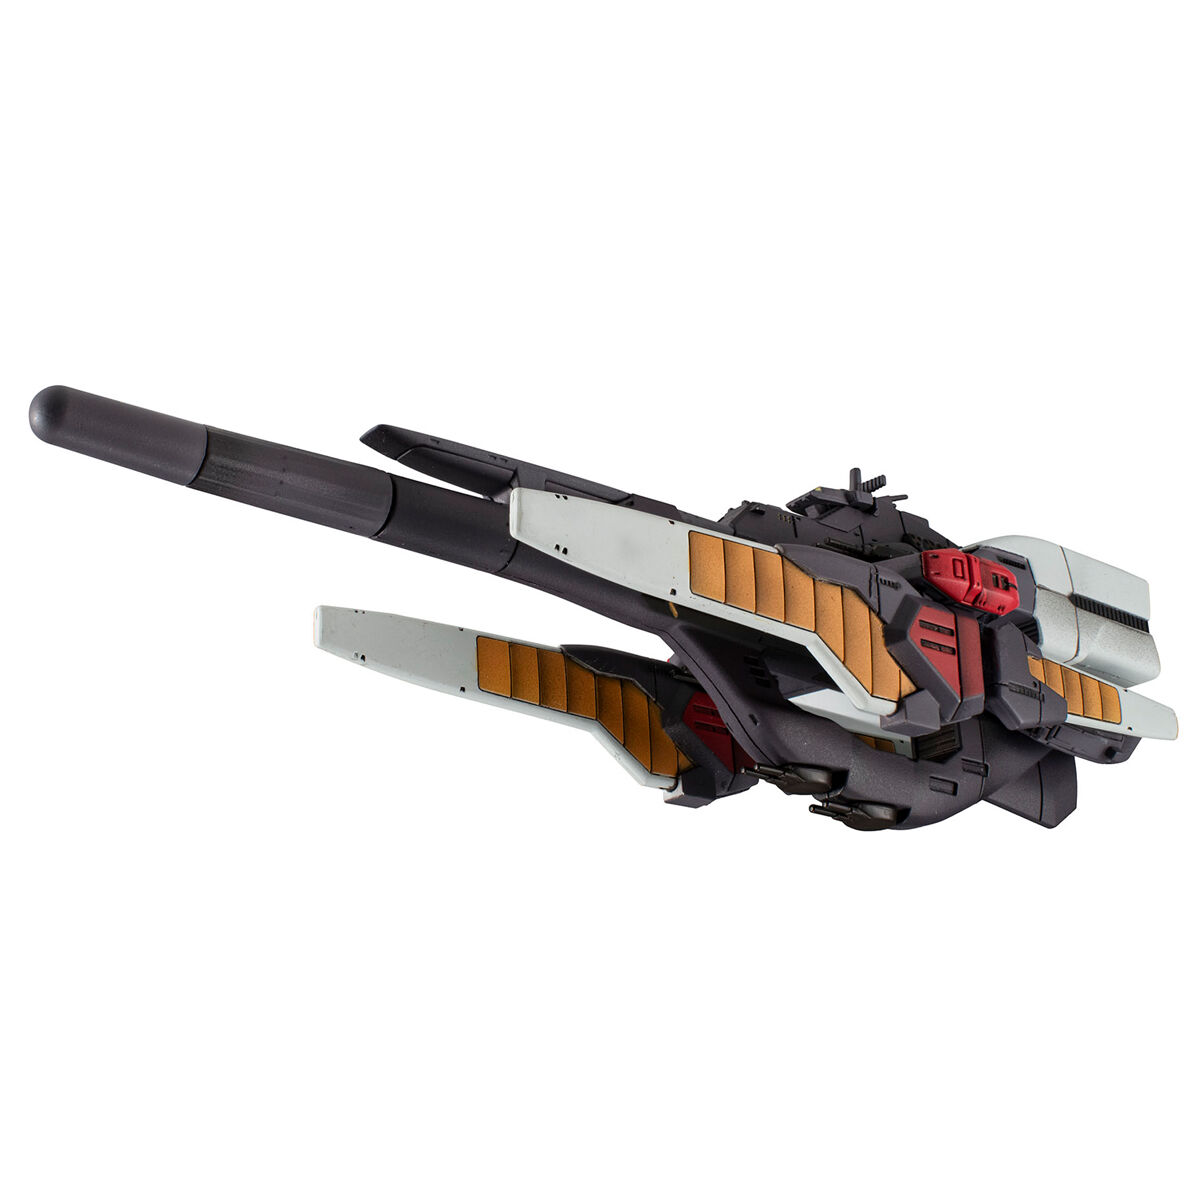 コスモフリートスペシャル『リーンホースJr.Re.』機動戦士Vガンダム 完成品モデル-007